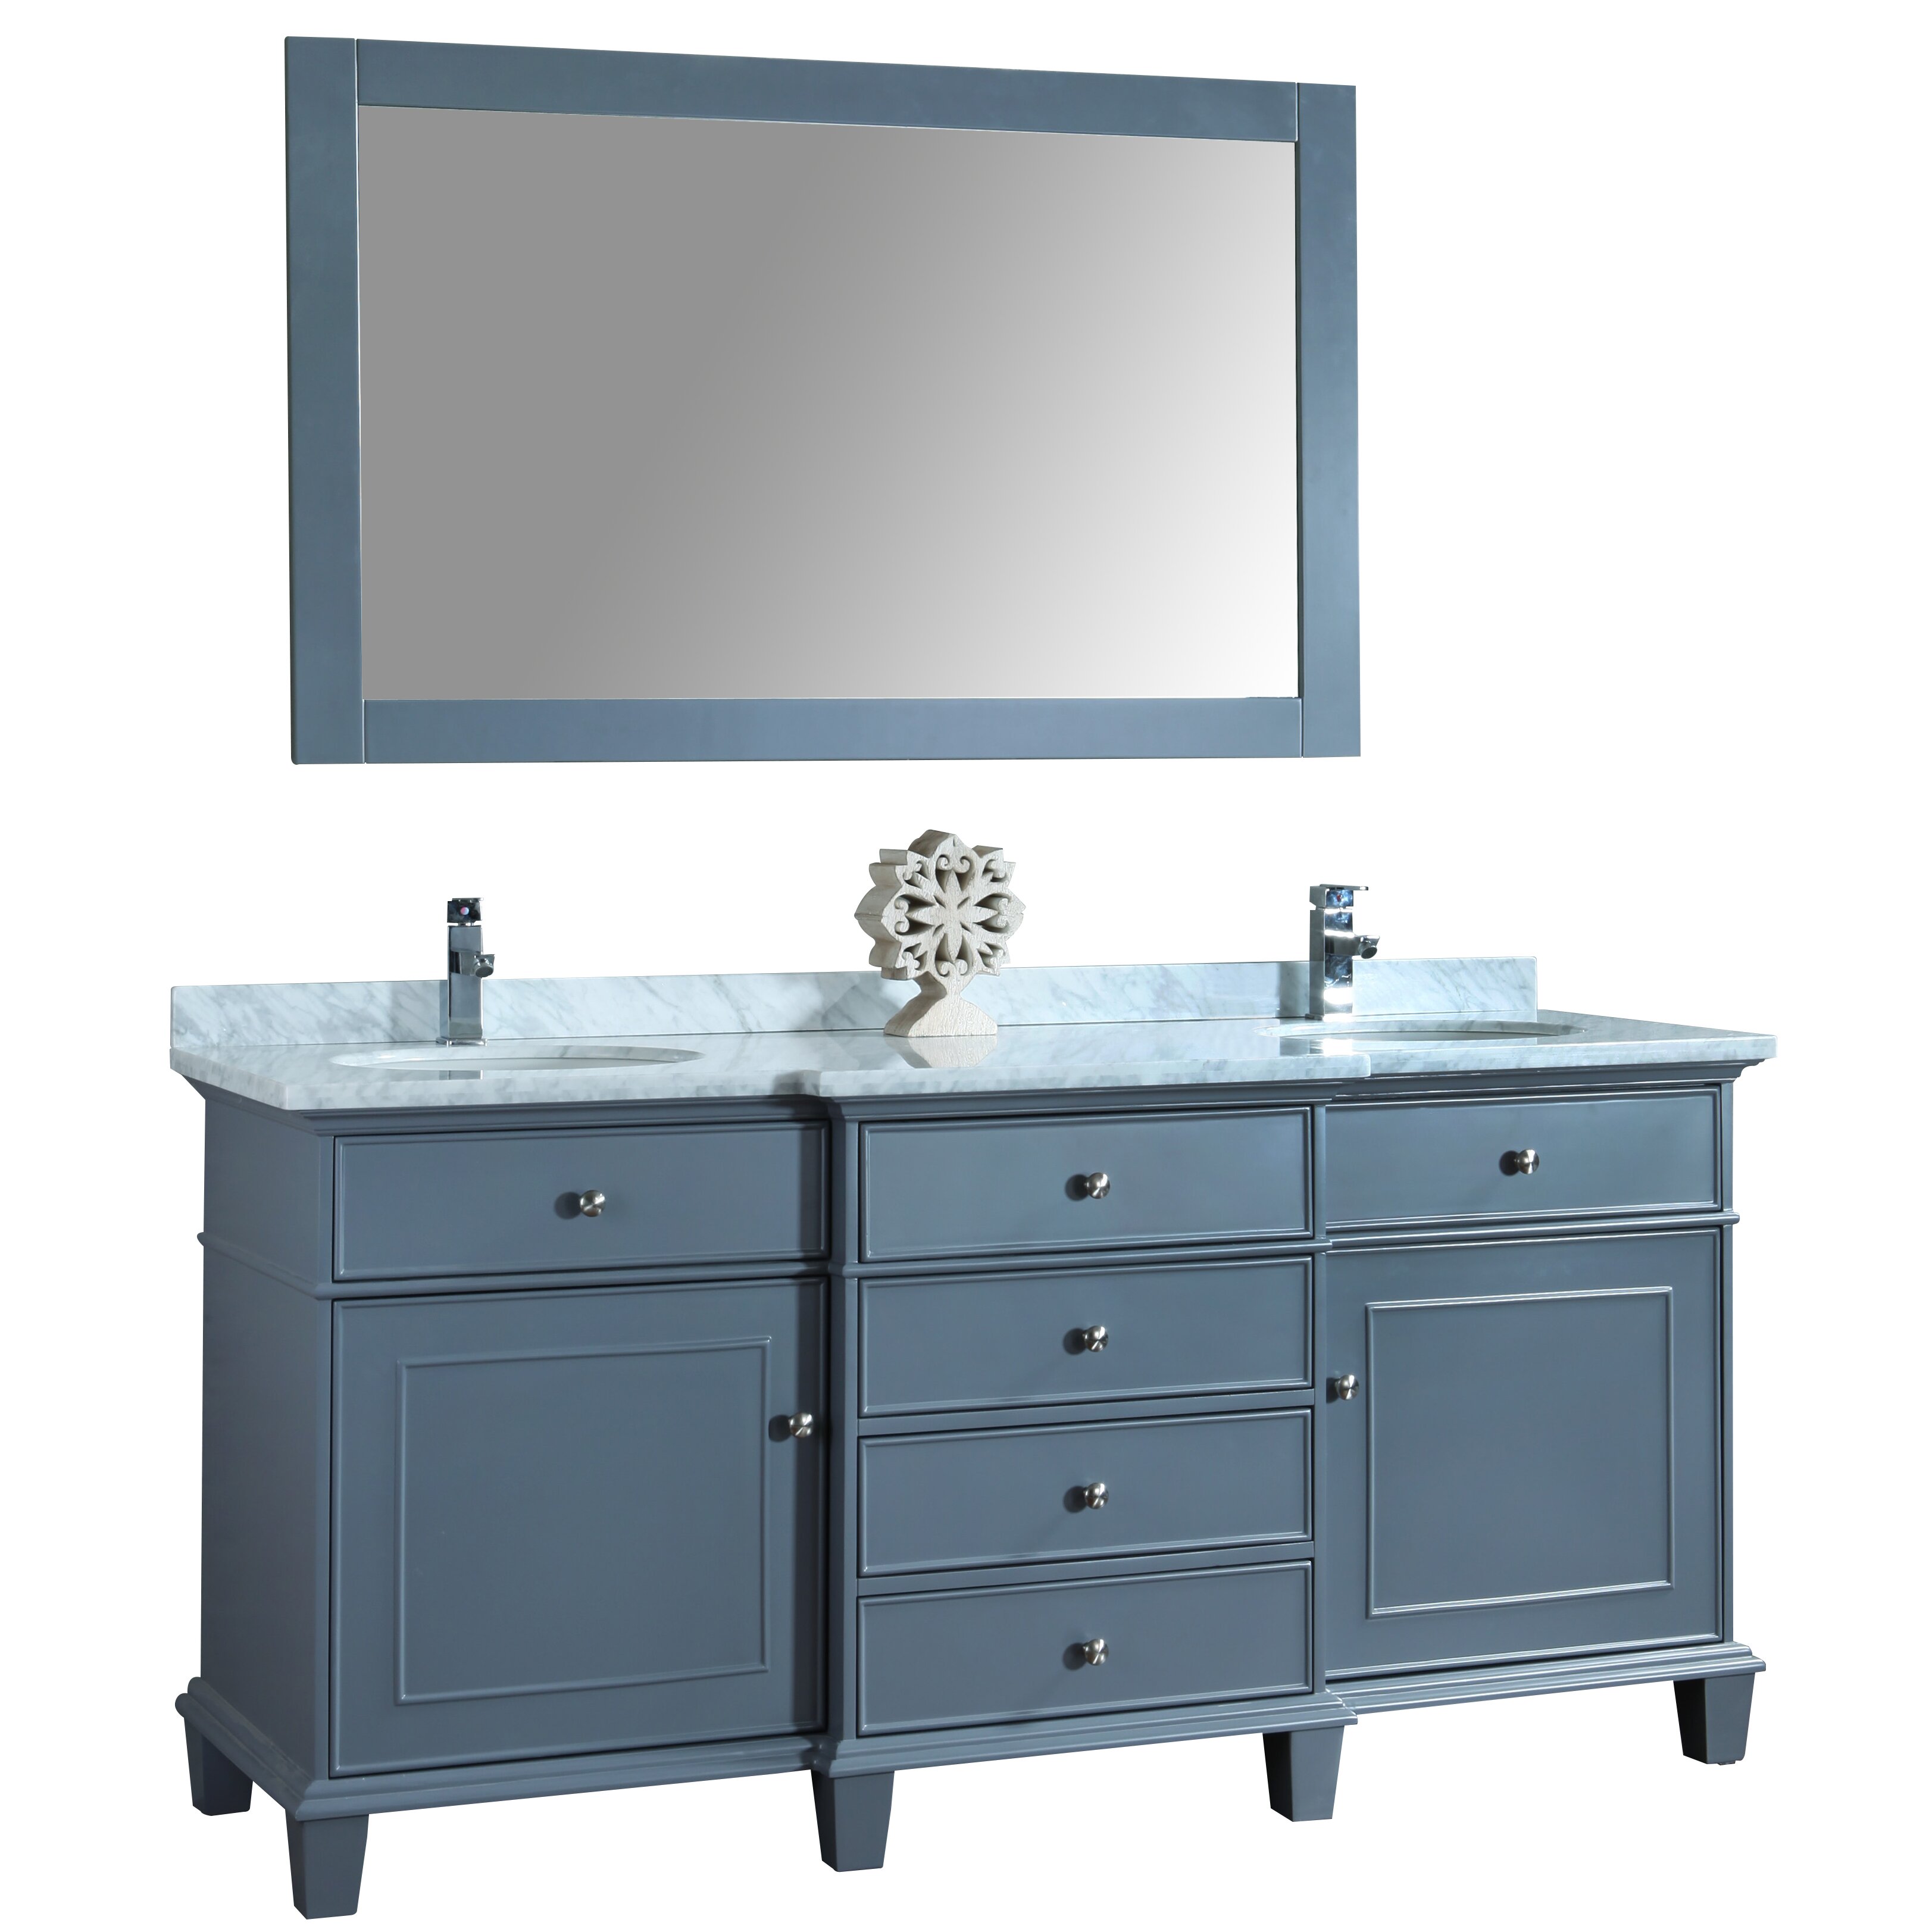  72quot; Double Sink Bathroom Vanity Set with Mirror amp; Reviews  Wayfair